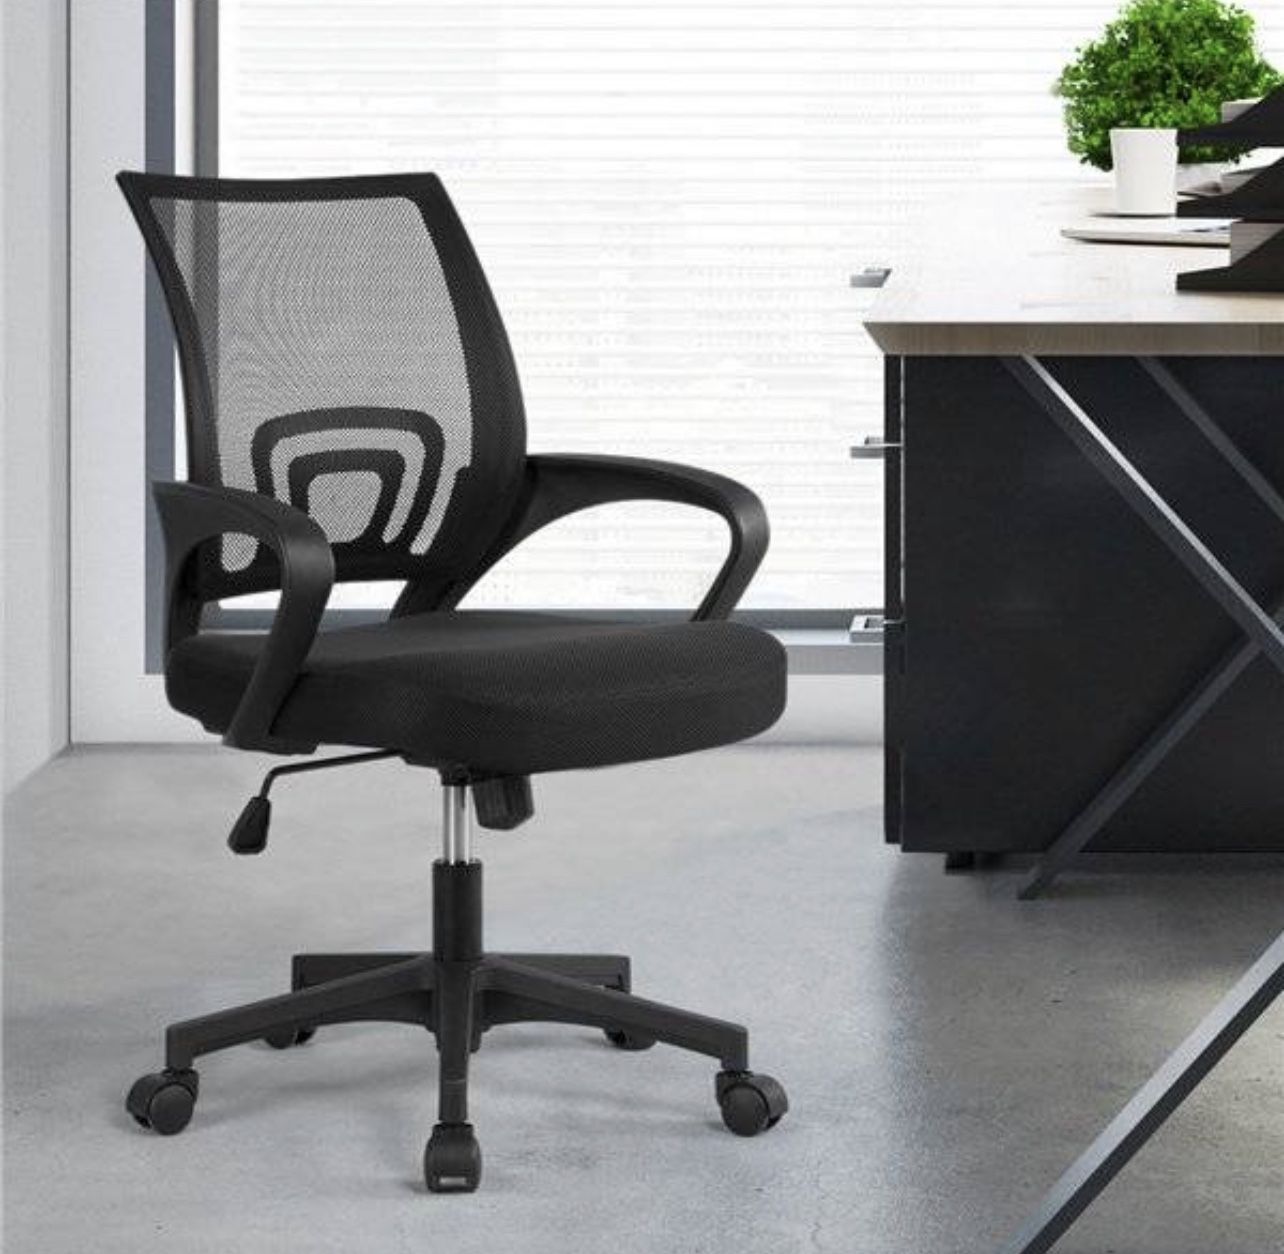 Black office desk chair - black - New